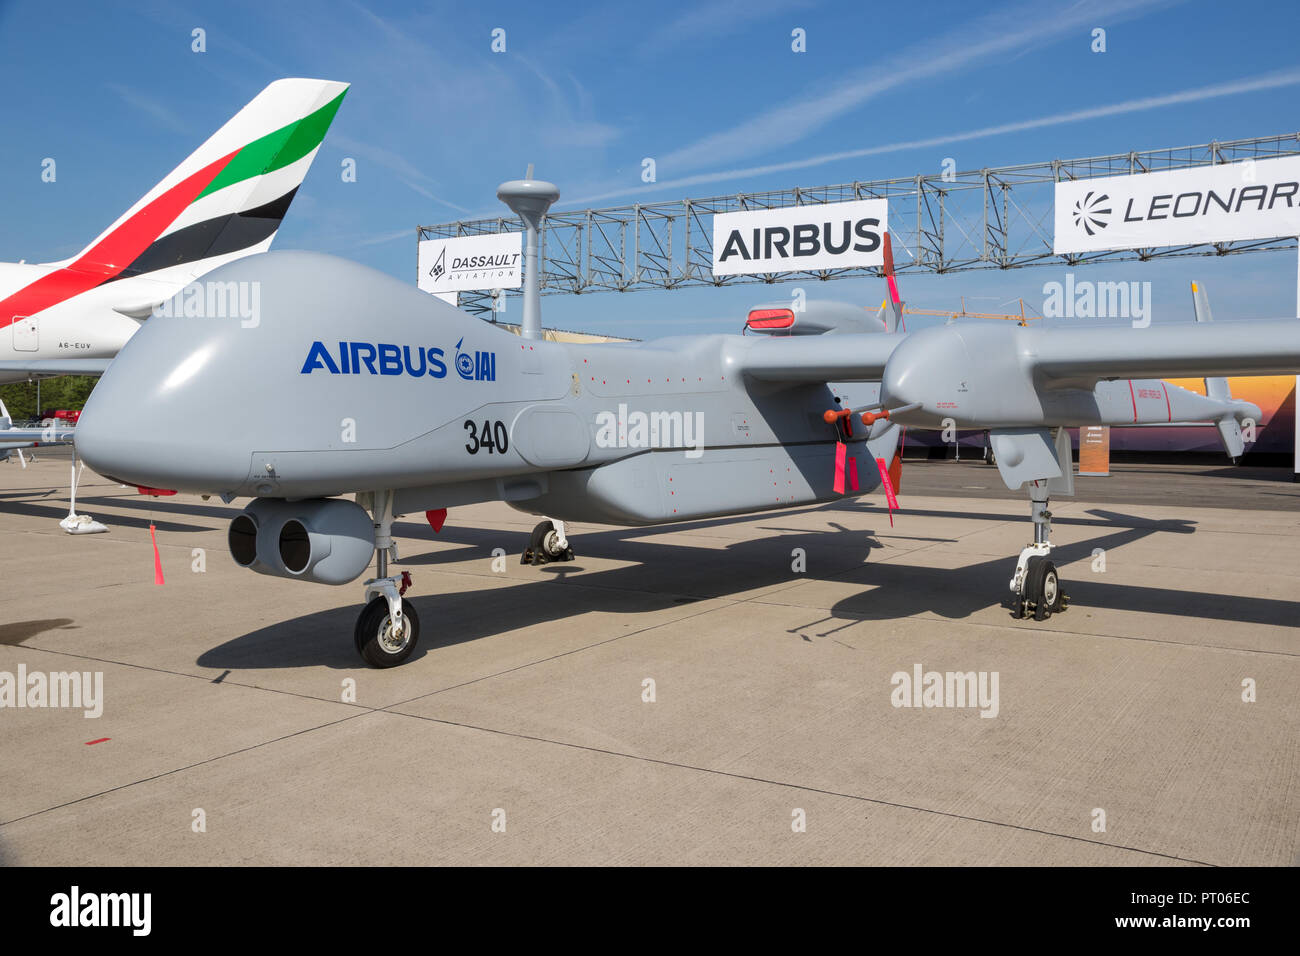 BERLIN, ALLEMAGNE - Apr 27, 2018 : Reconnaissance d'Airbus IAI Eitan UAV drone inébranlable sur l'affichage à l'ILA Berlin Air Show. Banque D'Images